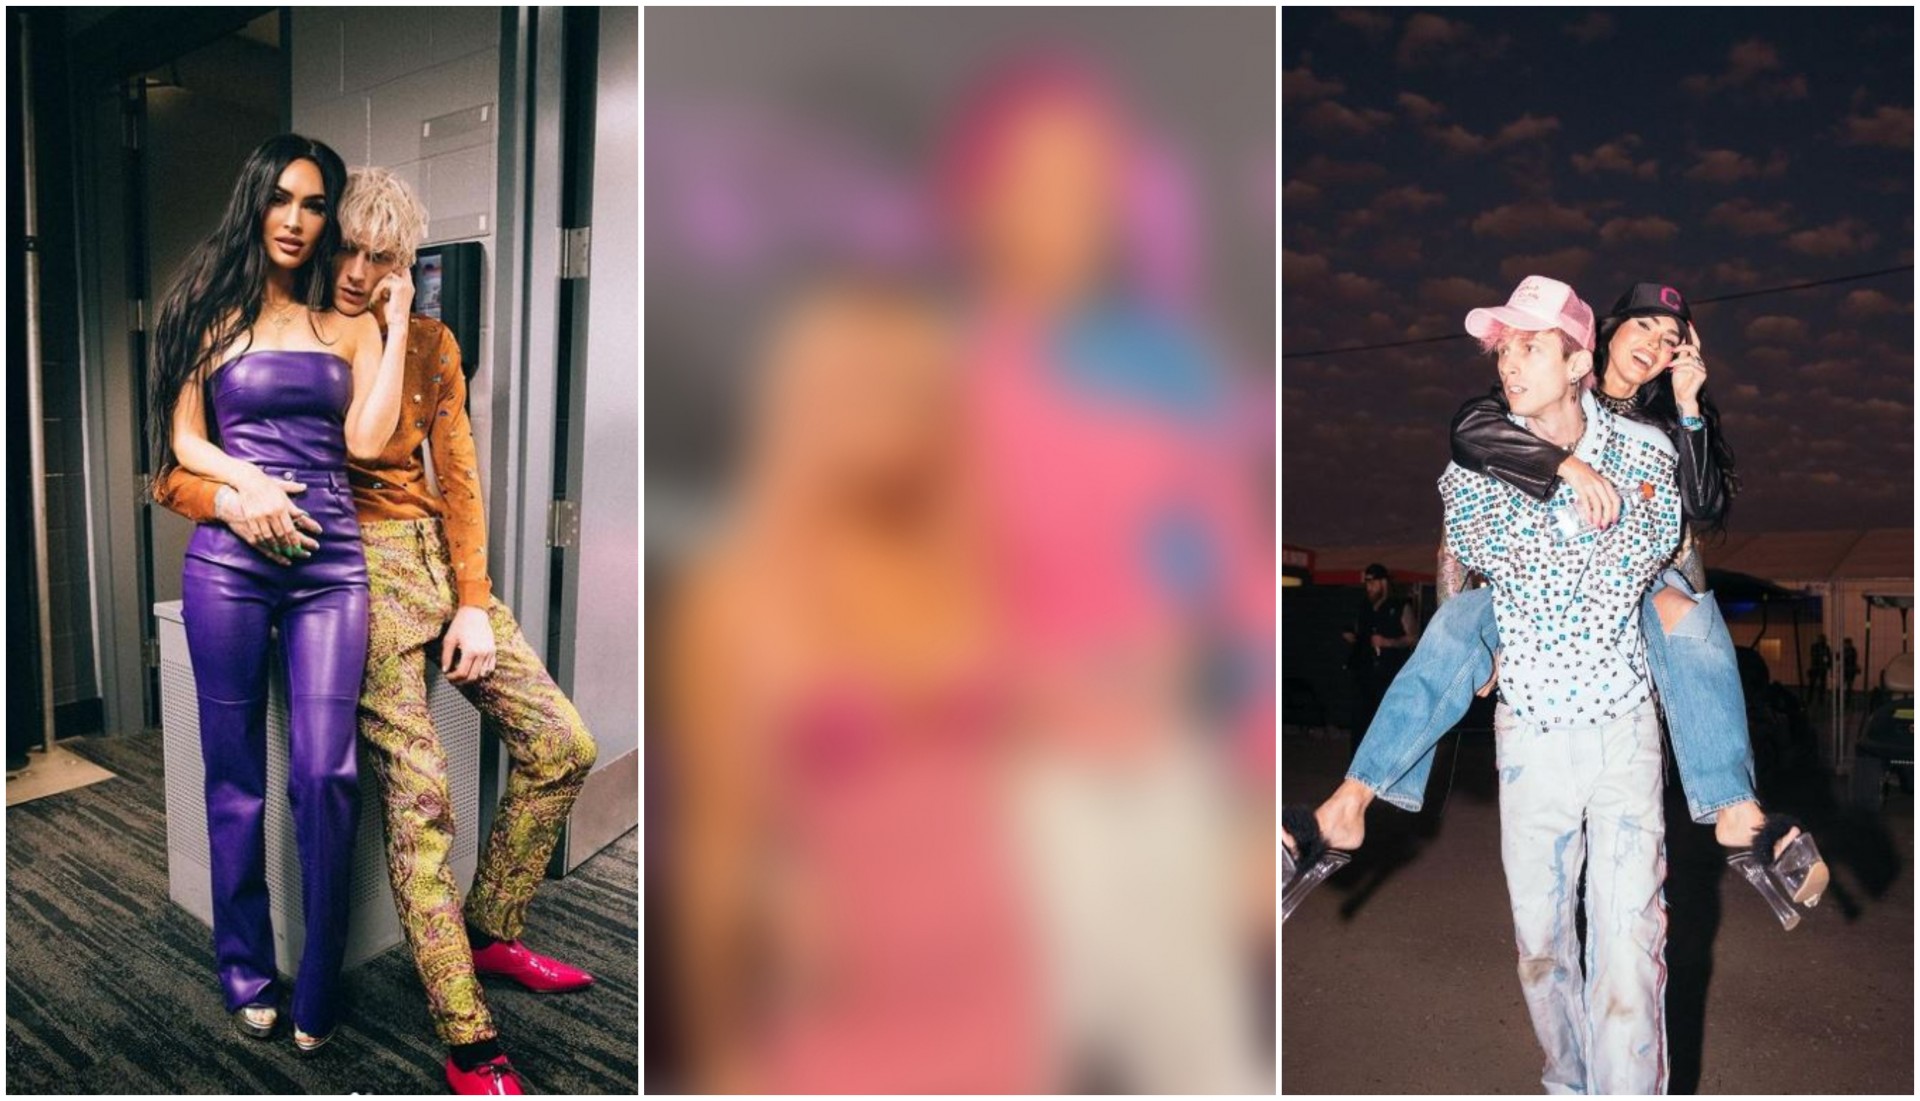 Меган Фокс и Машин Ган Кели како Кен и Барби: Со модната комбинација ја воодушевија публиката (ФОТО)